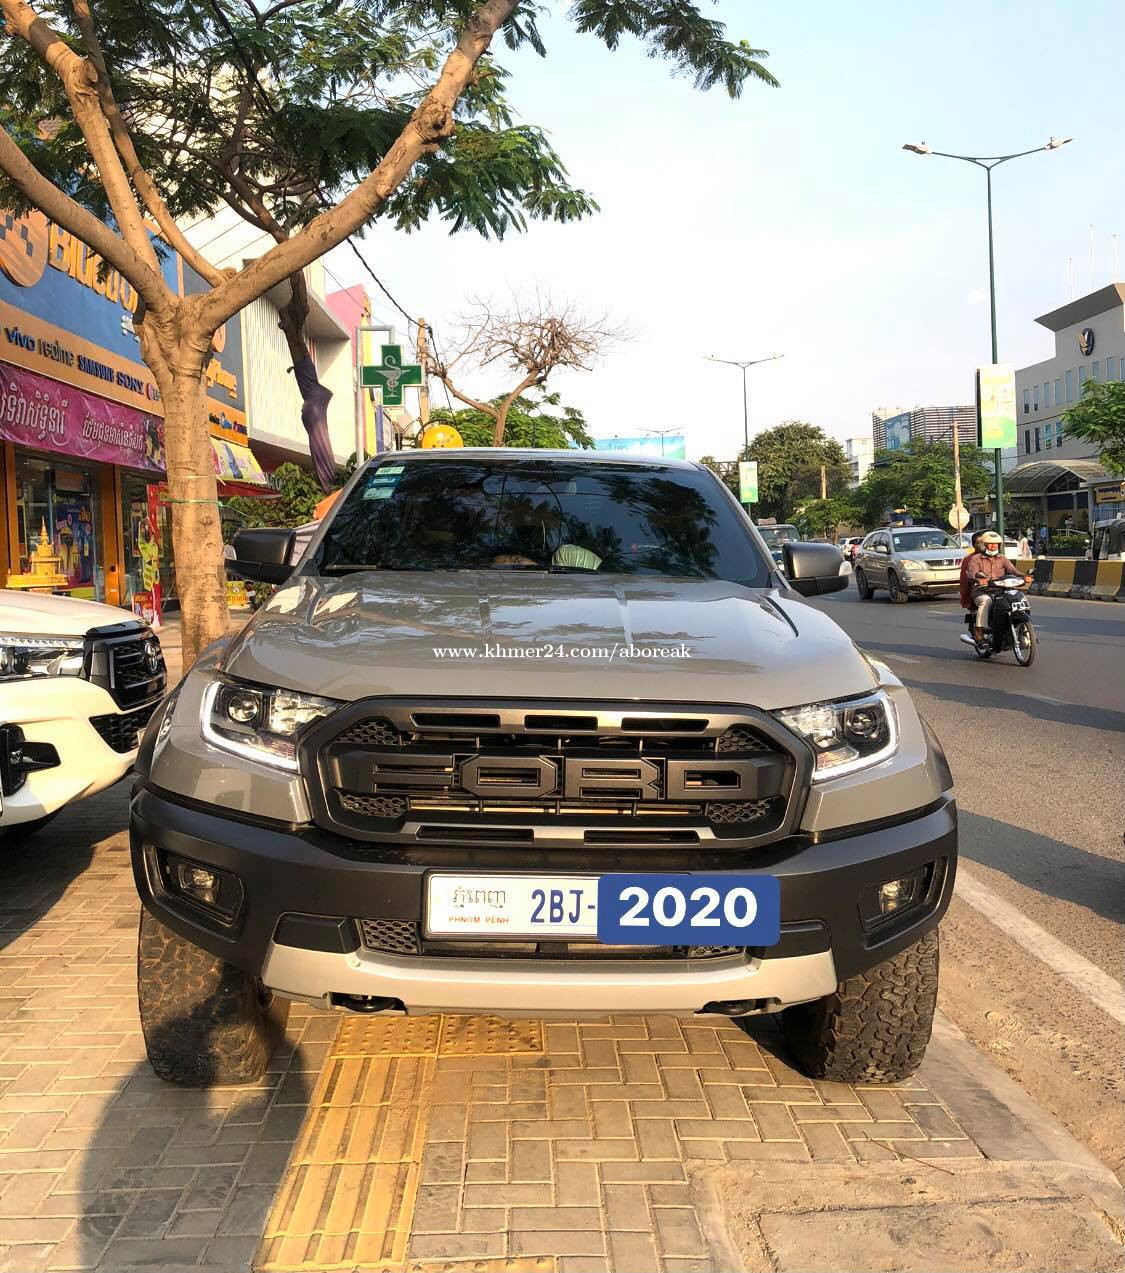 Ford Ranger Raptor 2020 in Phnom Penh, Cambodia on Khmer24.com